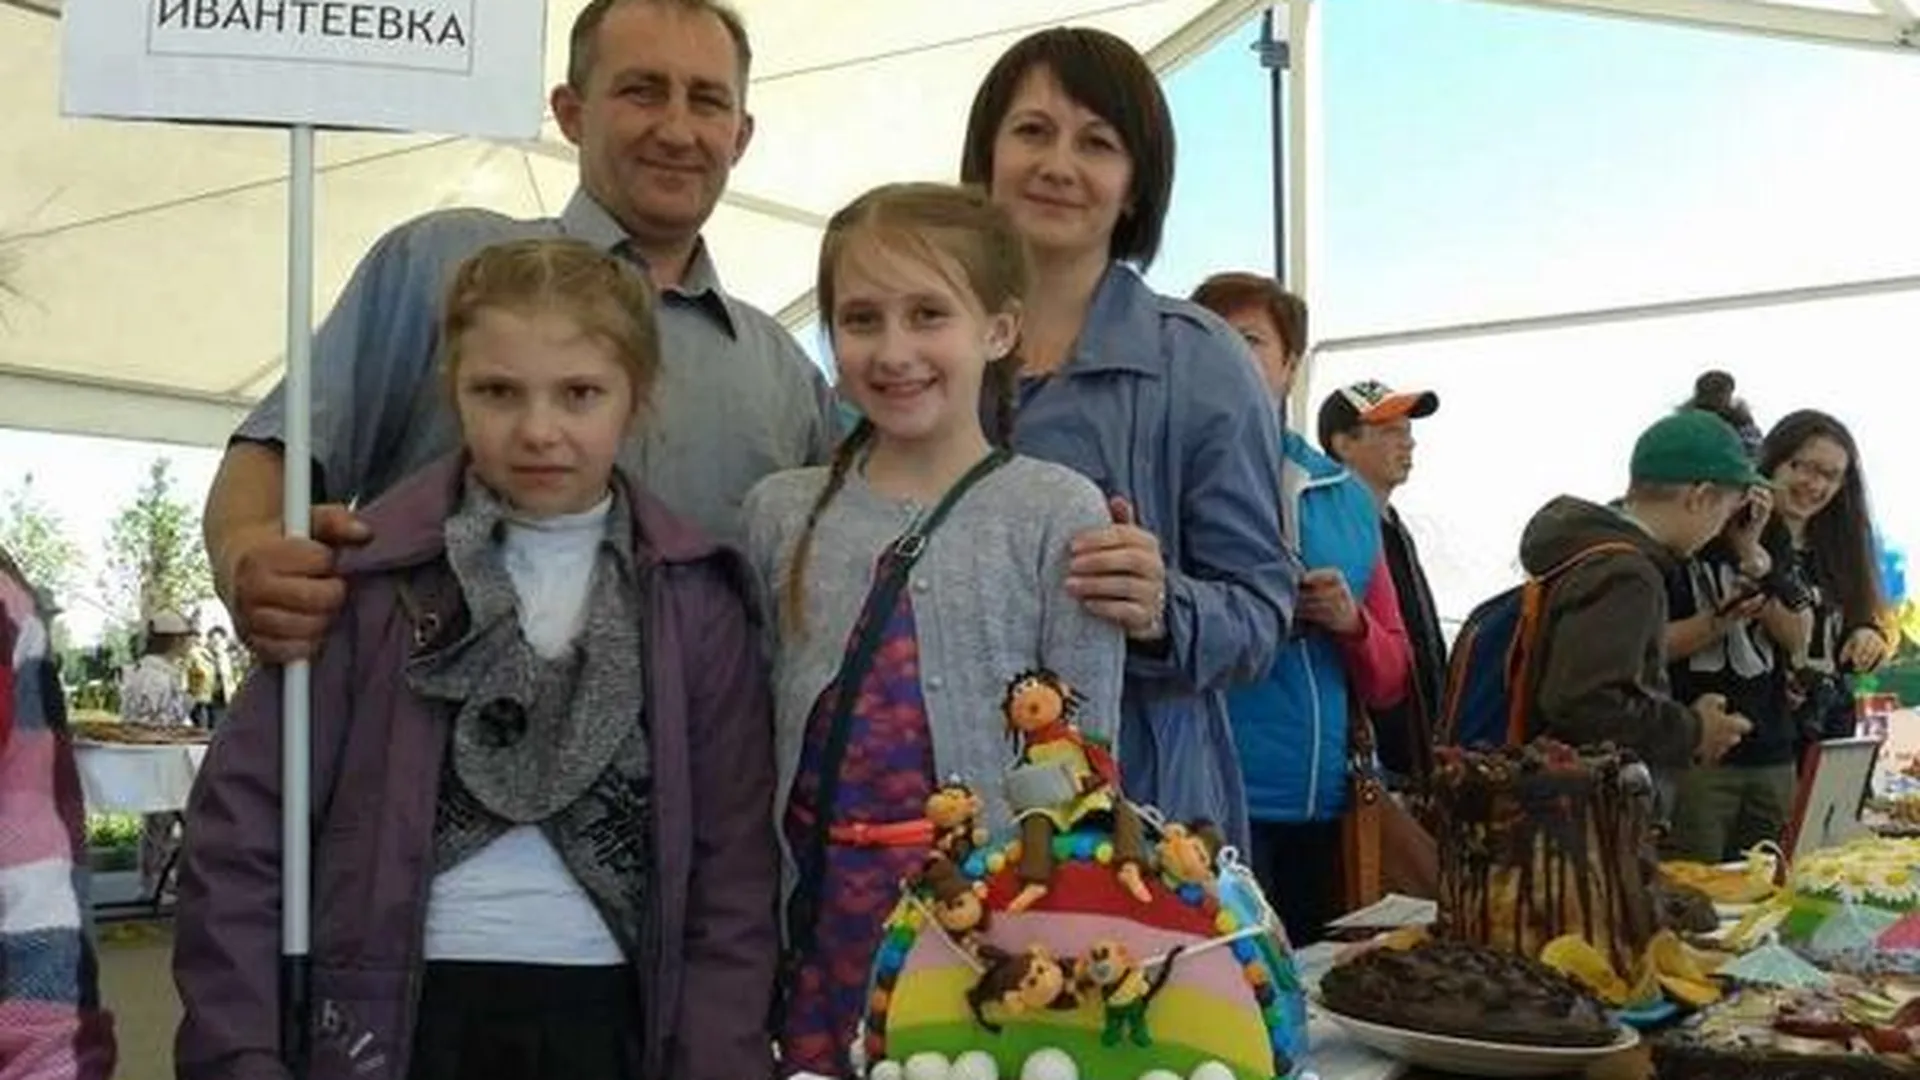 Многодетная семья из Ивантеевки испекла самый красивый пирог